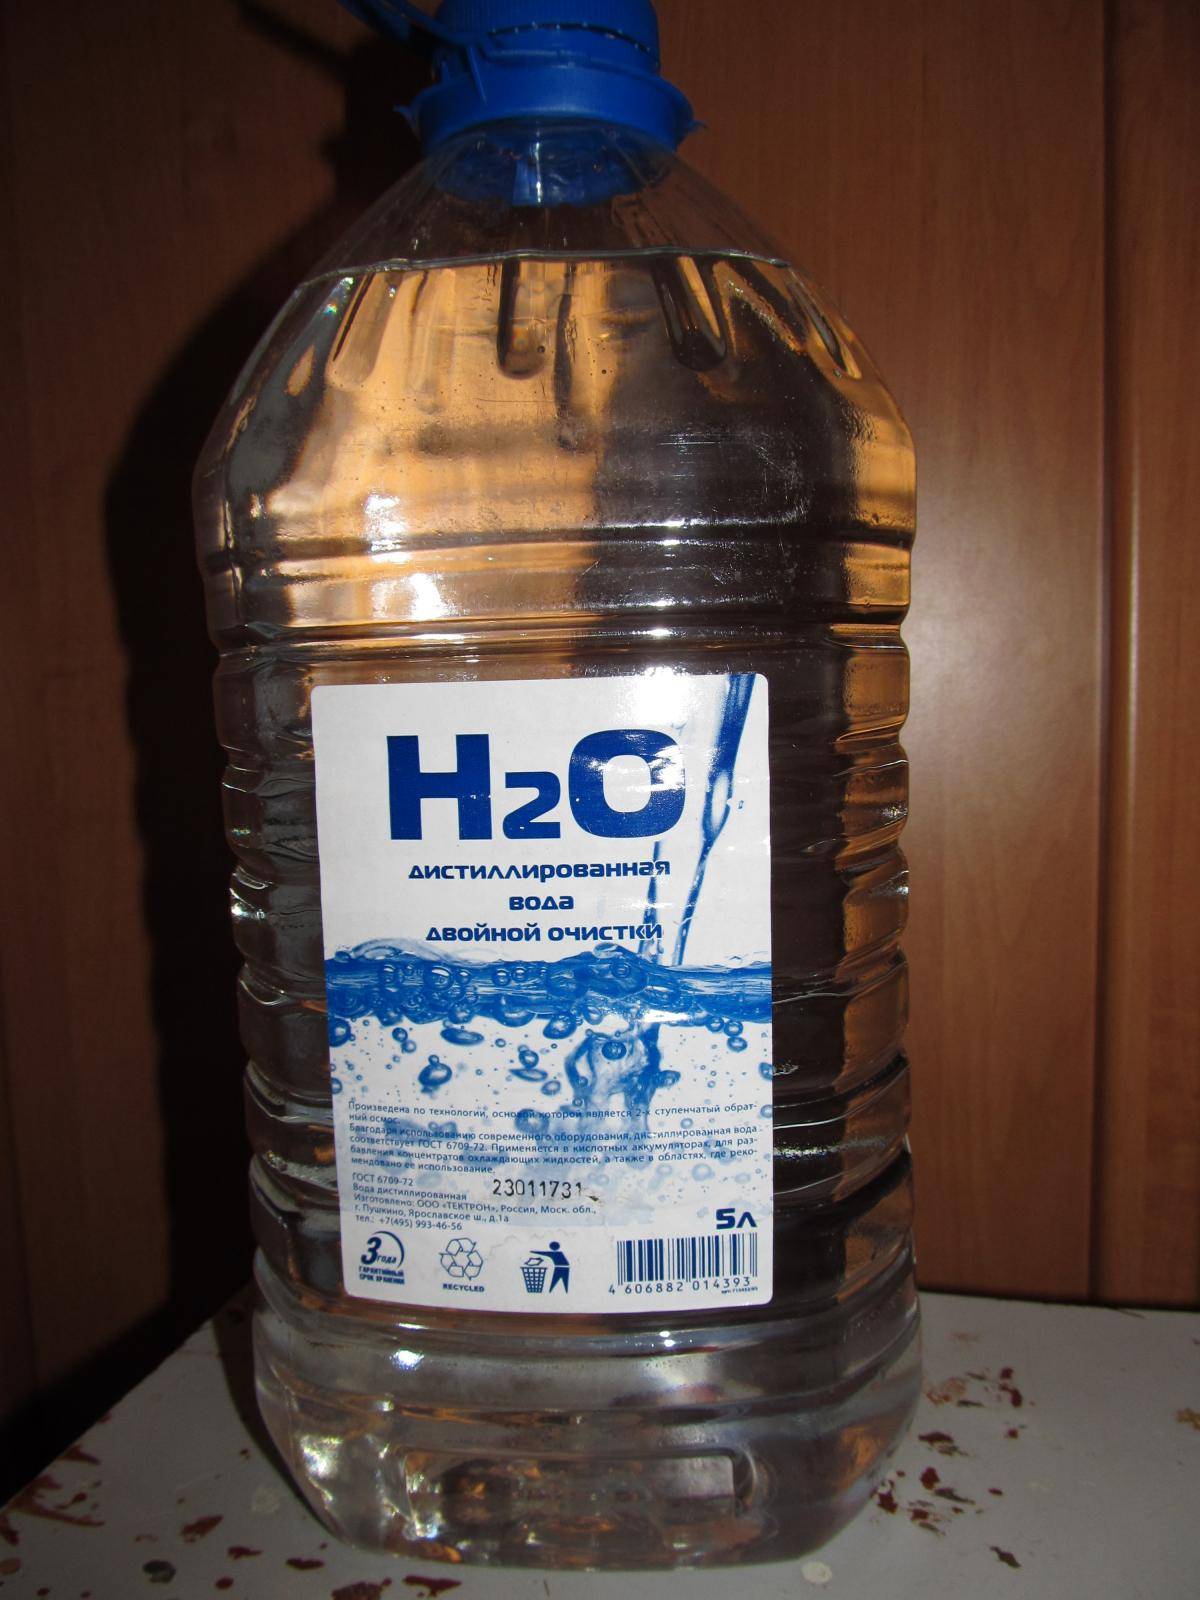 Дистиллированная вода - свойства. можно ли пить дистиллированную воду и как сделать в домашних условиях